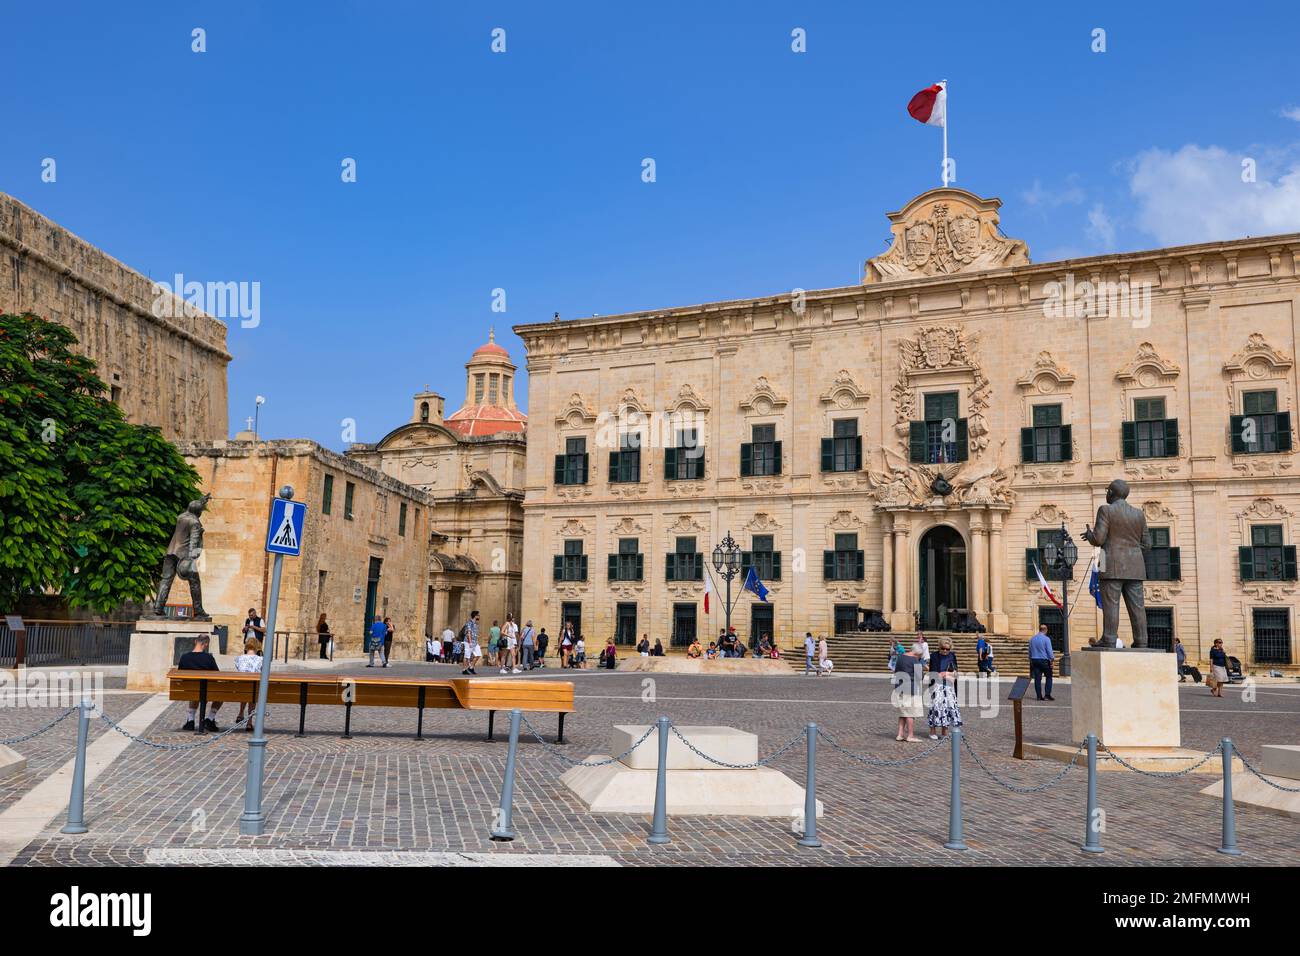 Valletta, Malta - 10. Oktober 2019 - Auberge de Castille, Wahrzeichen der Stadt aus dem 18. Jahrhundert, spanische Barockarchitektur. Stockfoto